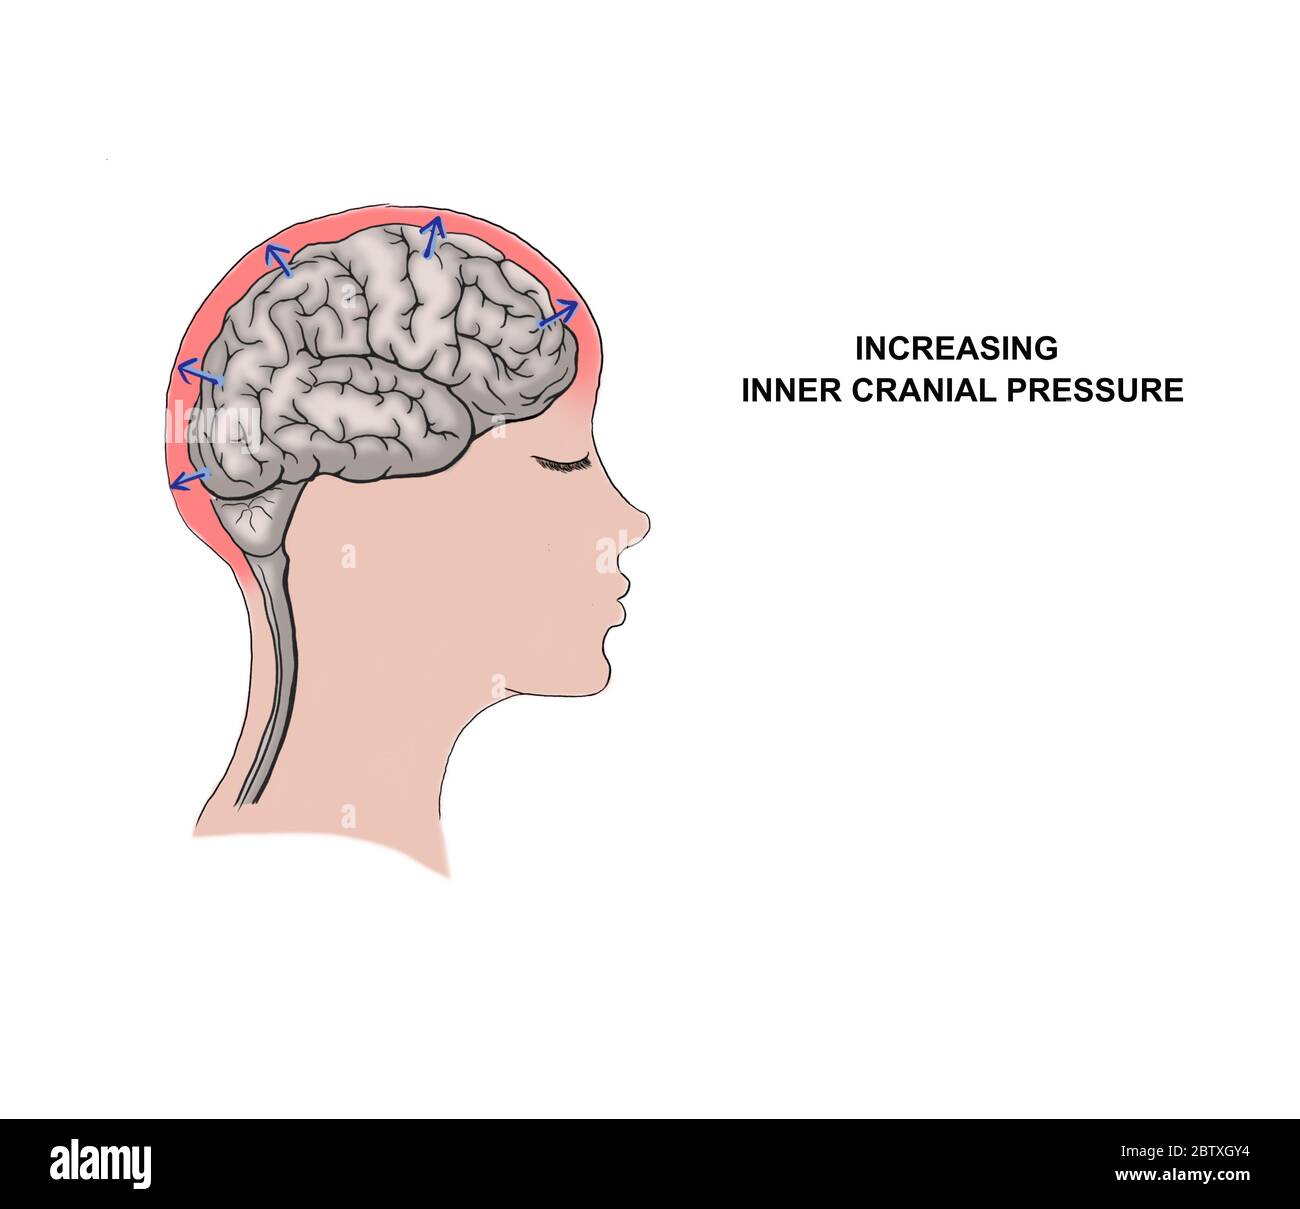 Ilustración médica del aumento de la presión craneal interna Foto de stock